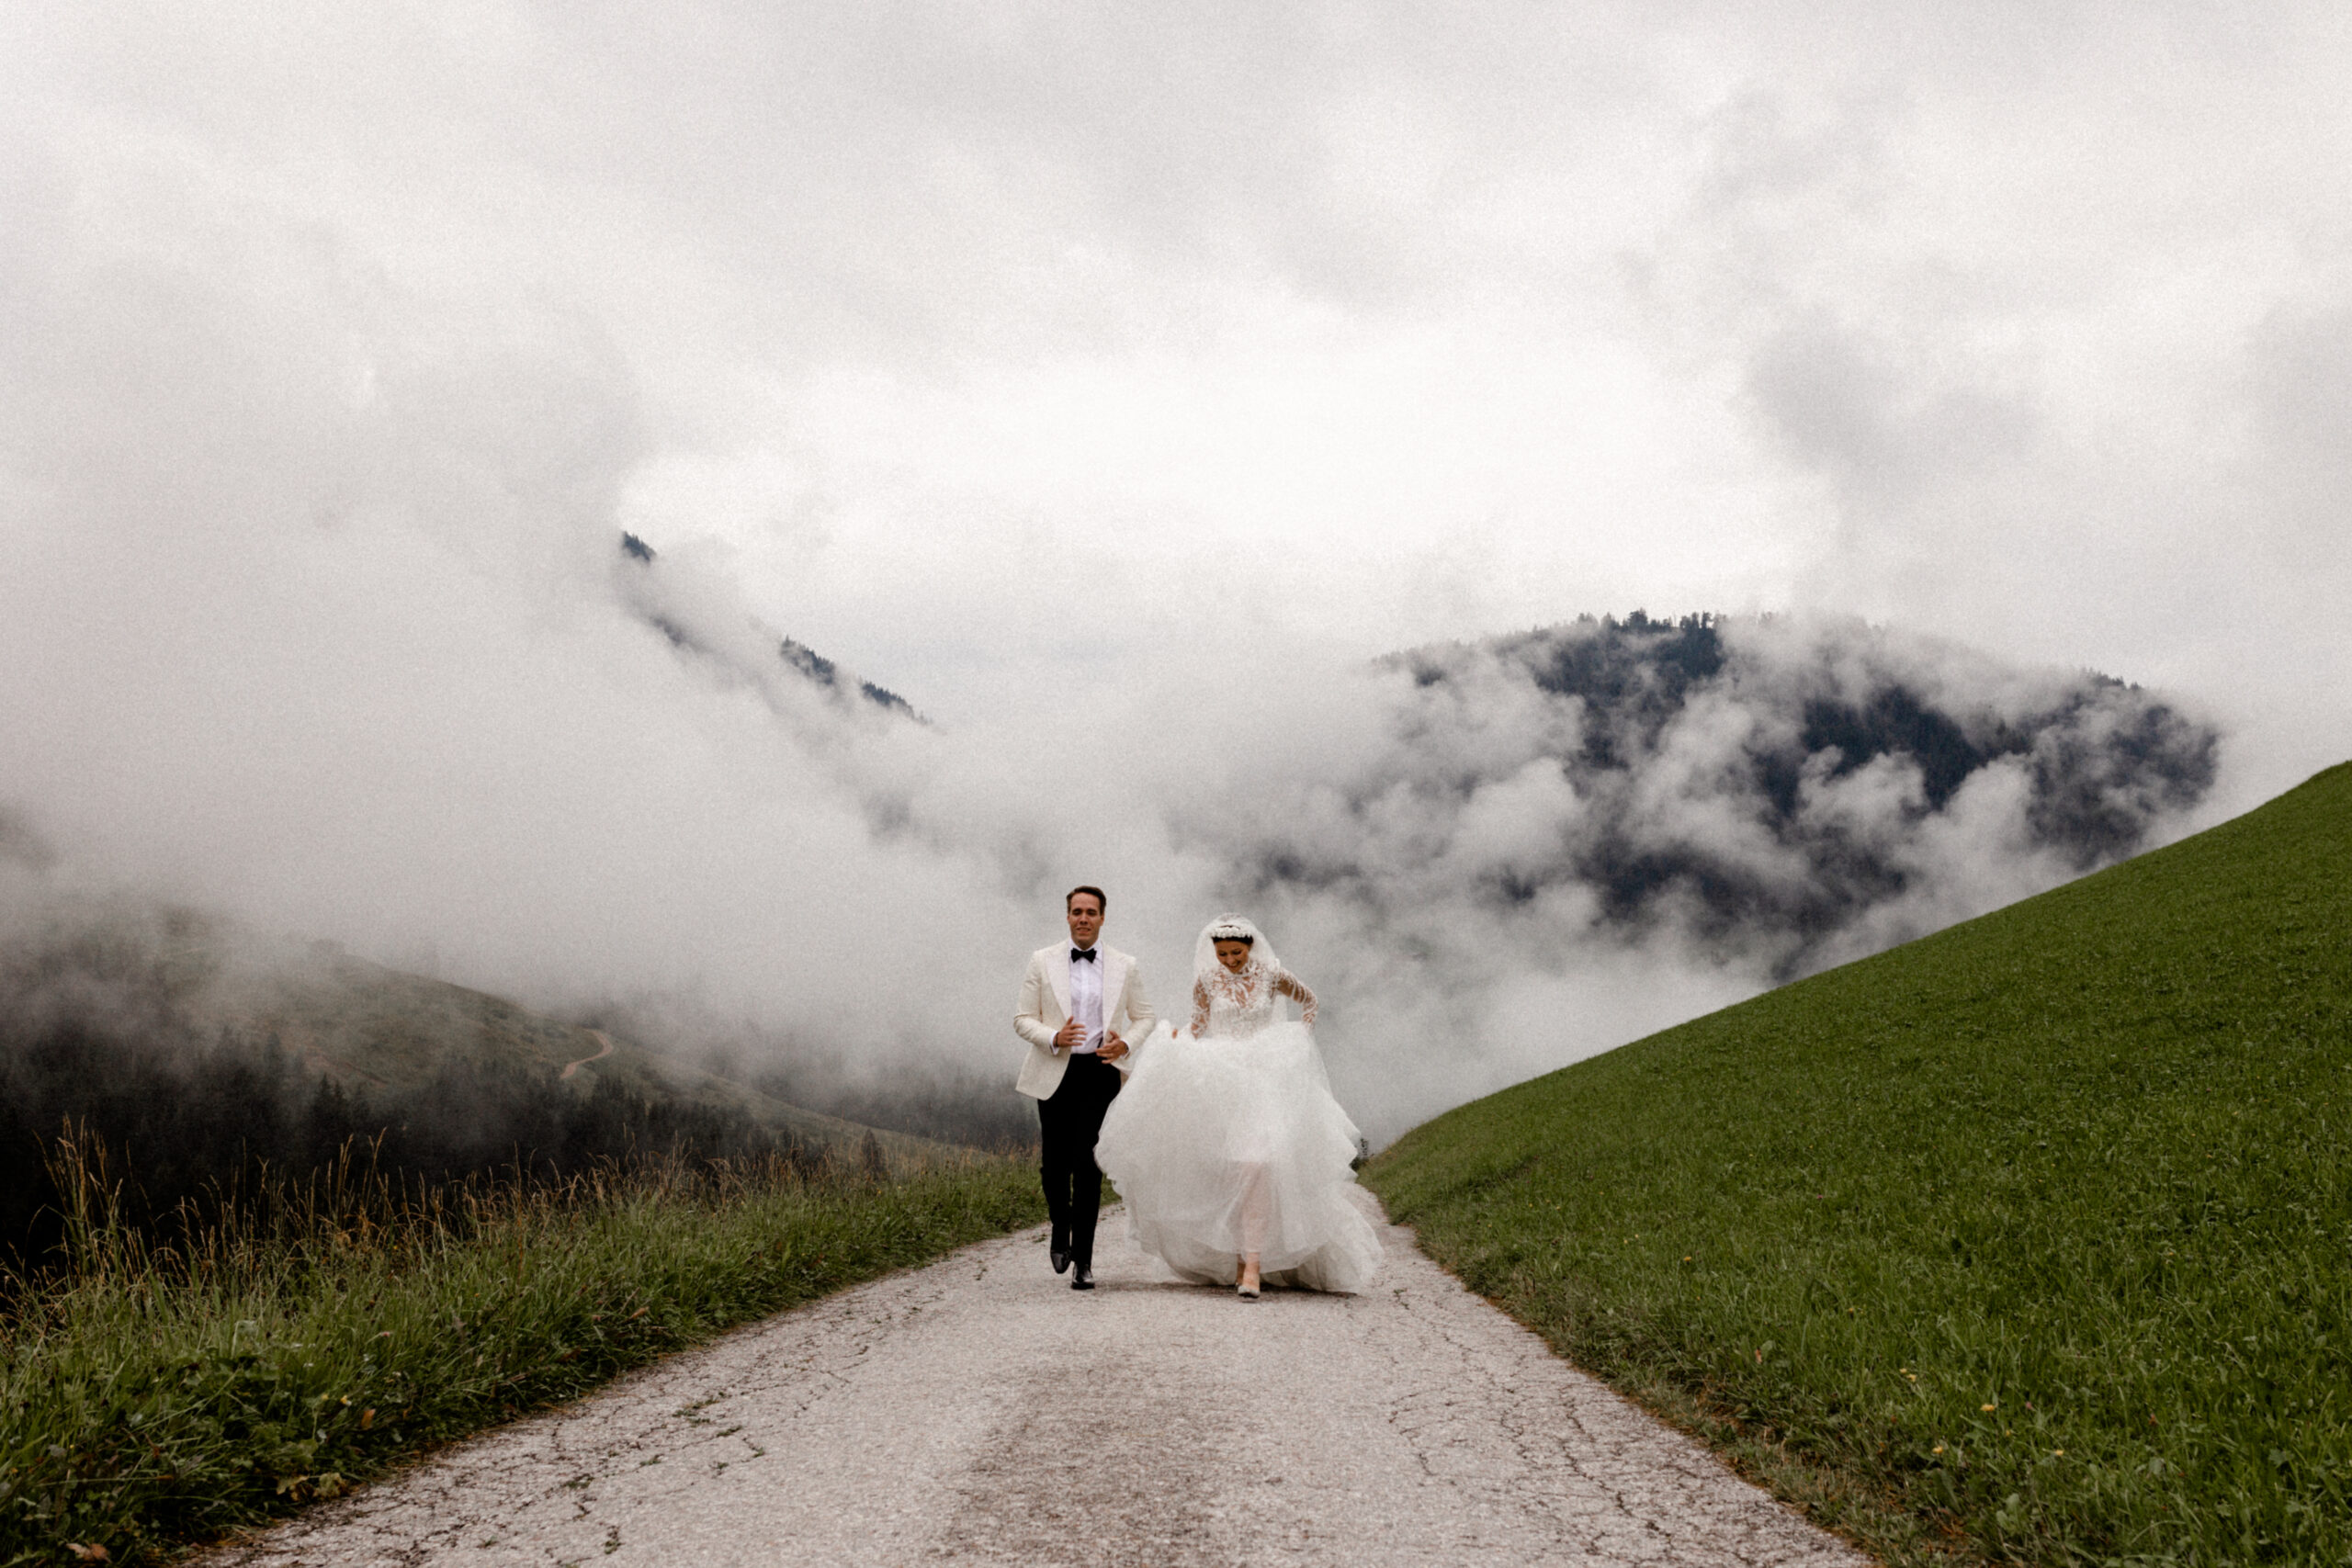 Das Brautpaar vor den Bergen und dem Nebel auf dem Weg während des Paarshootings Ein tolles Naturschauspiel in Südtirol während der Destinationwedding - Fotografie NRW Köln Bonn Wesseling